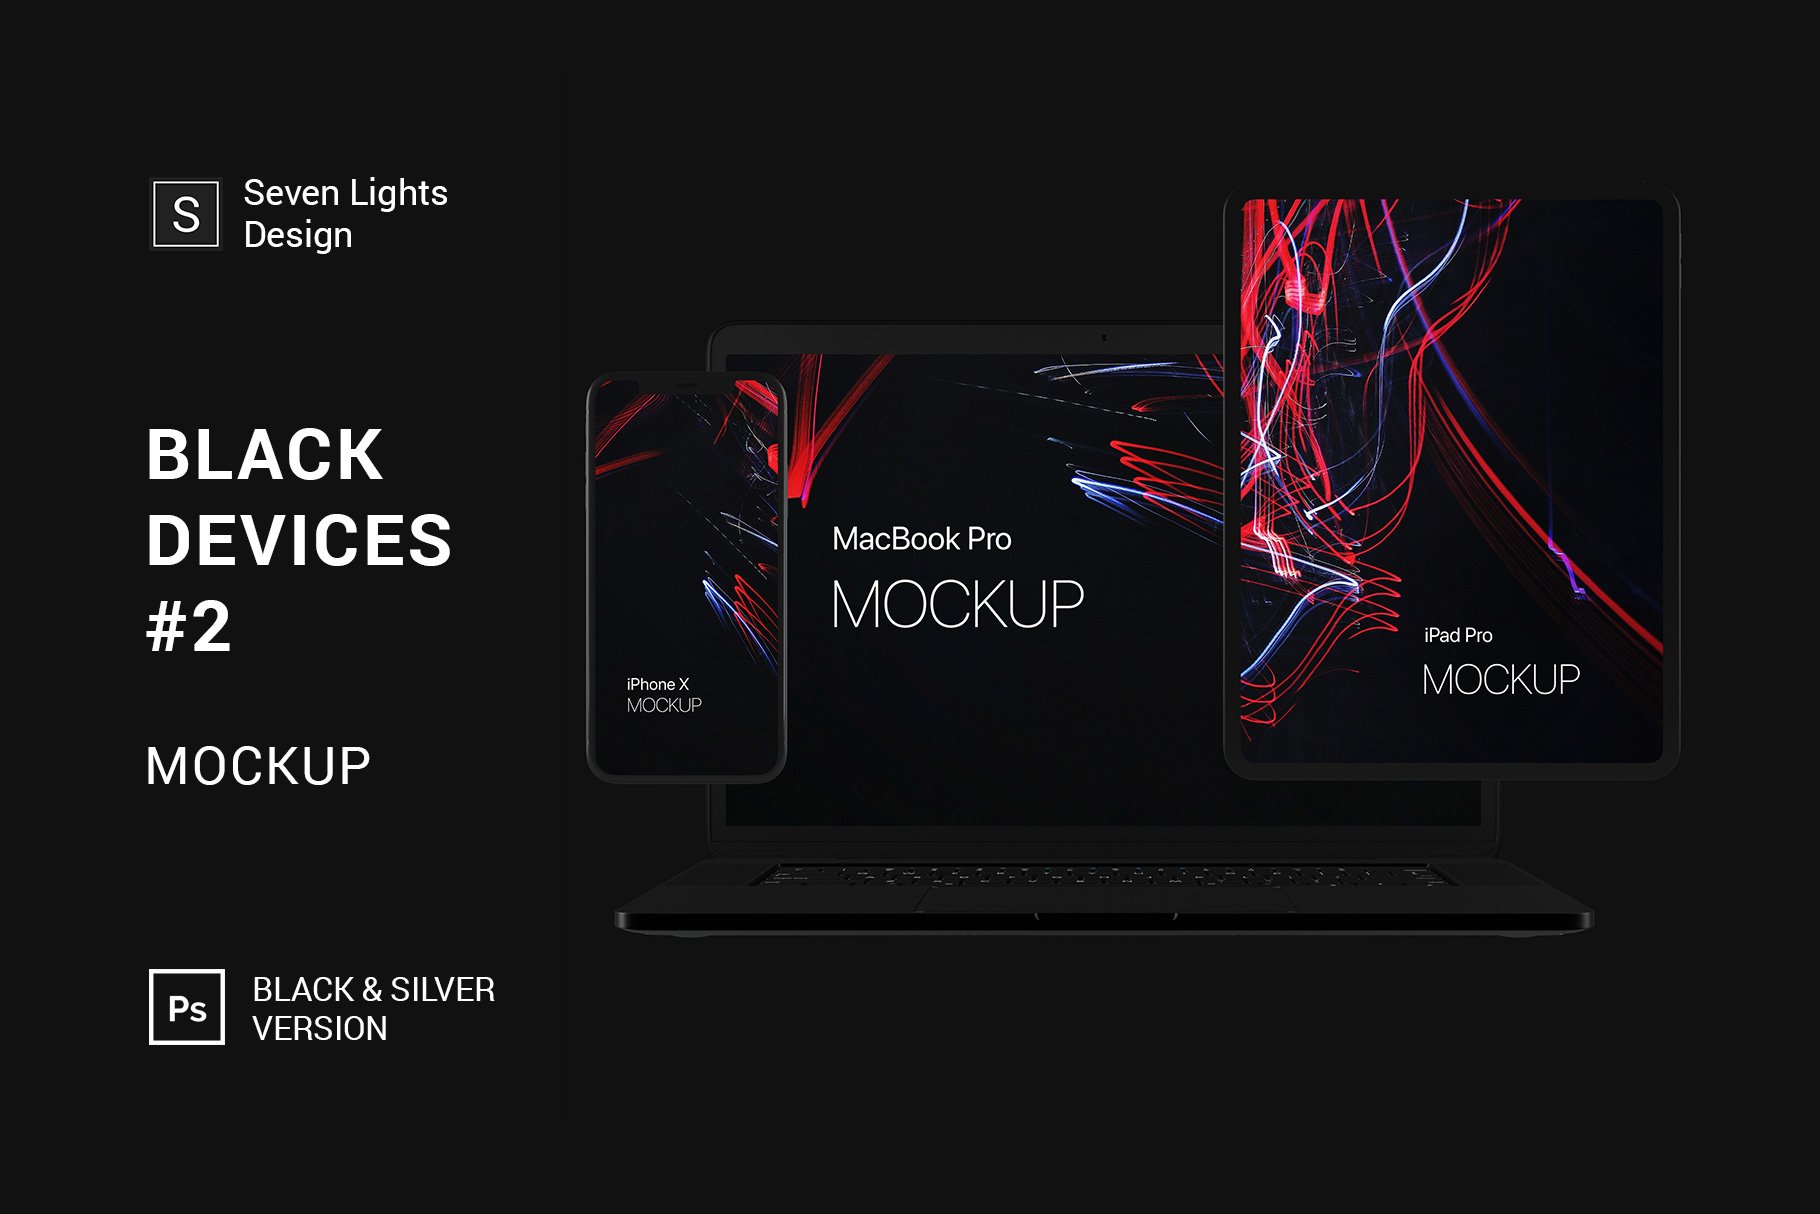 黑色系网站UI设计提案苹果设备展示样机合集 Black Apple Devices Mockup Set插图